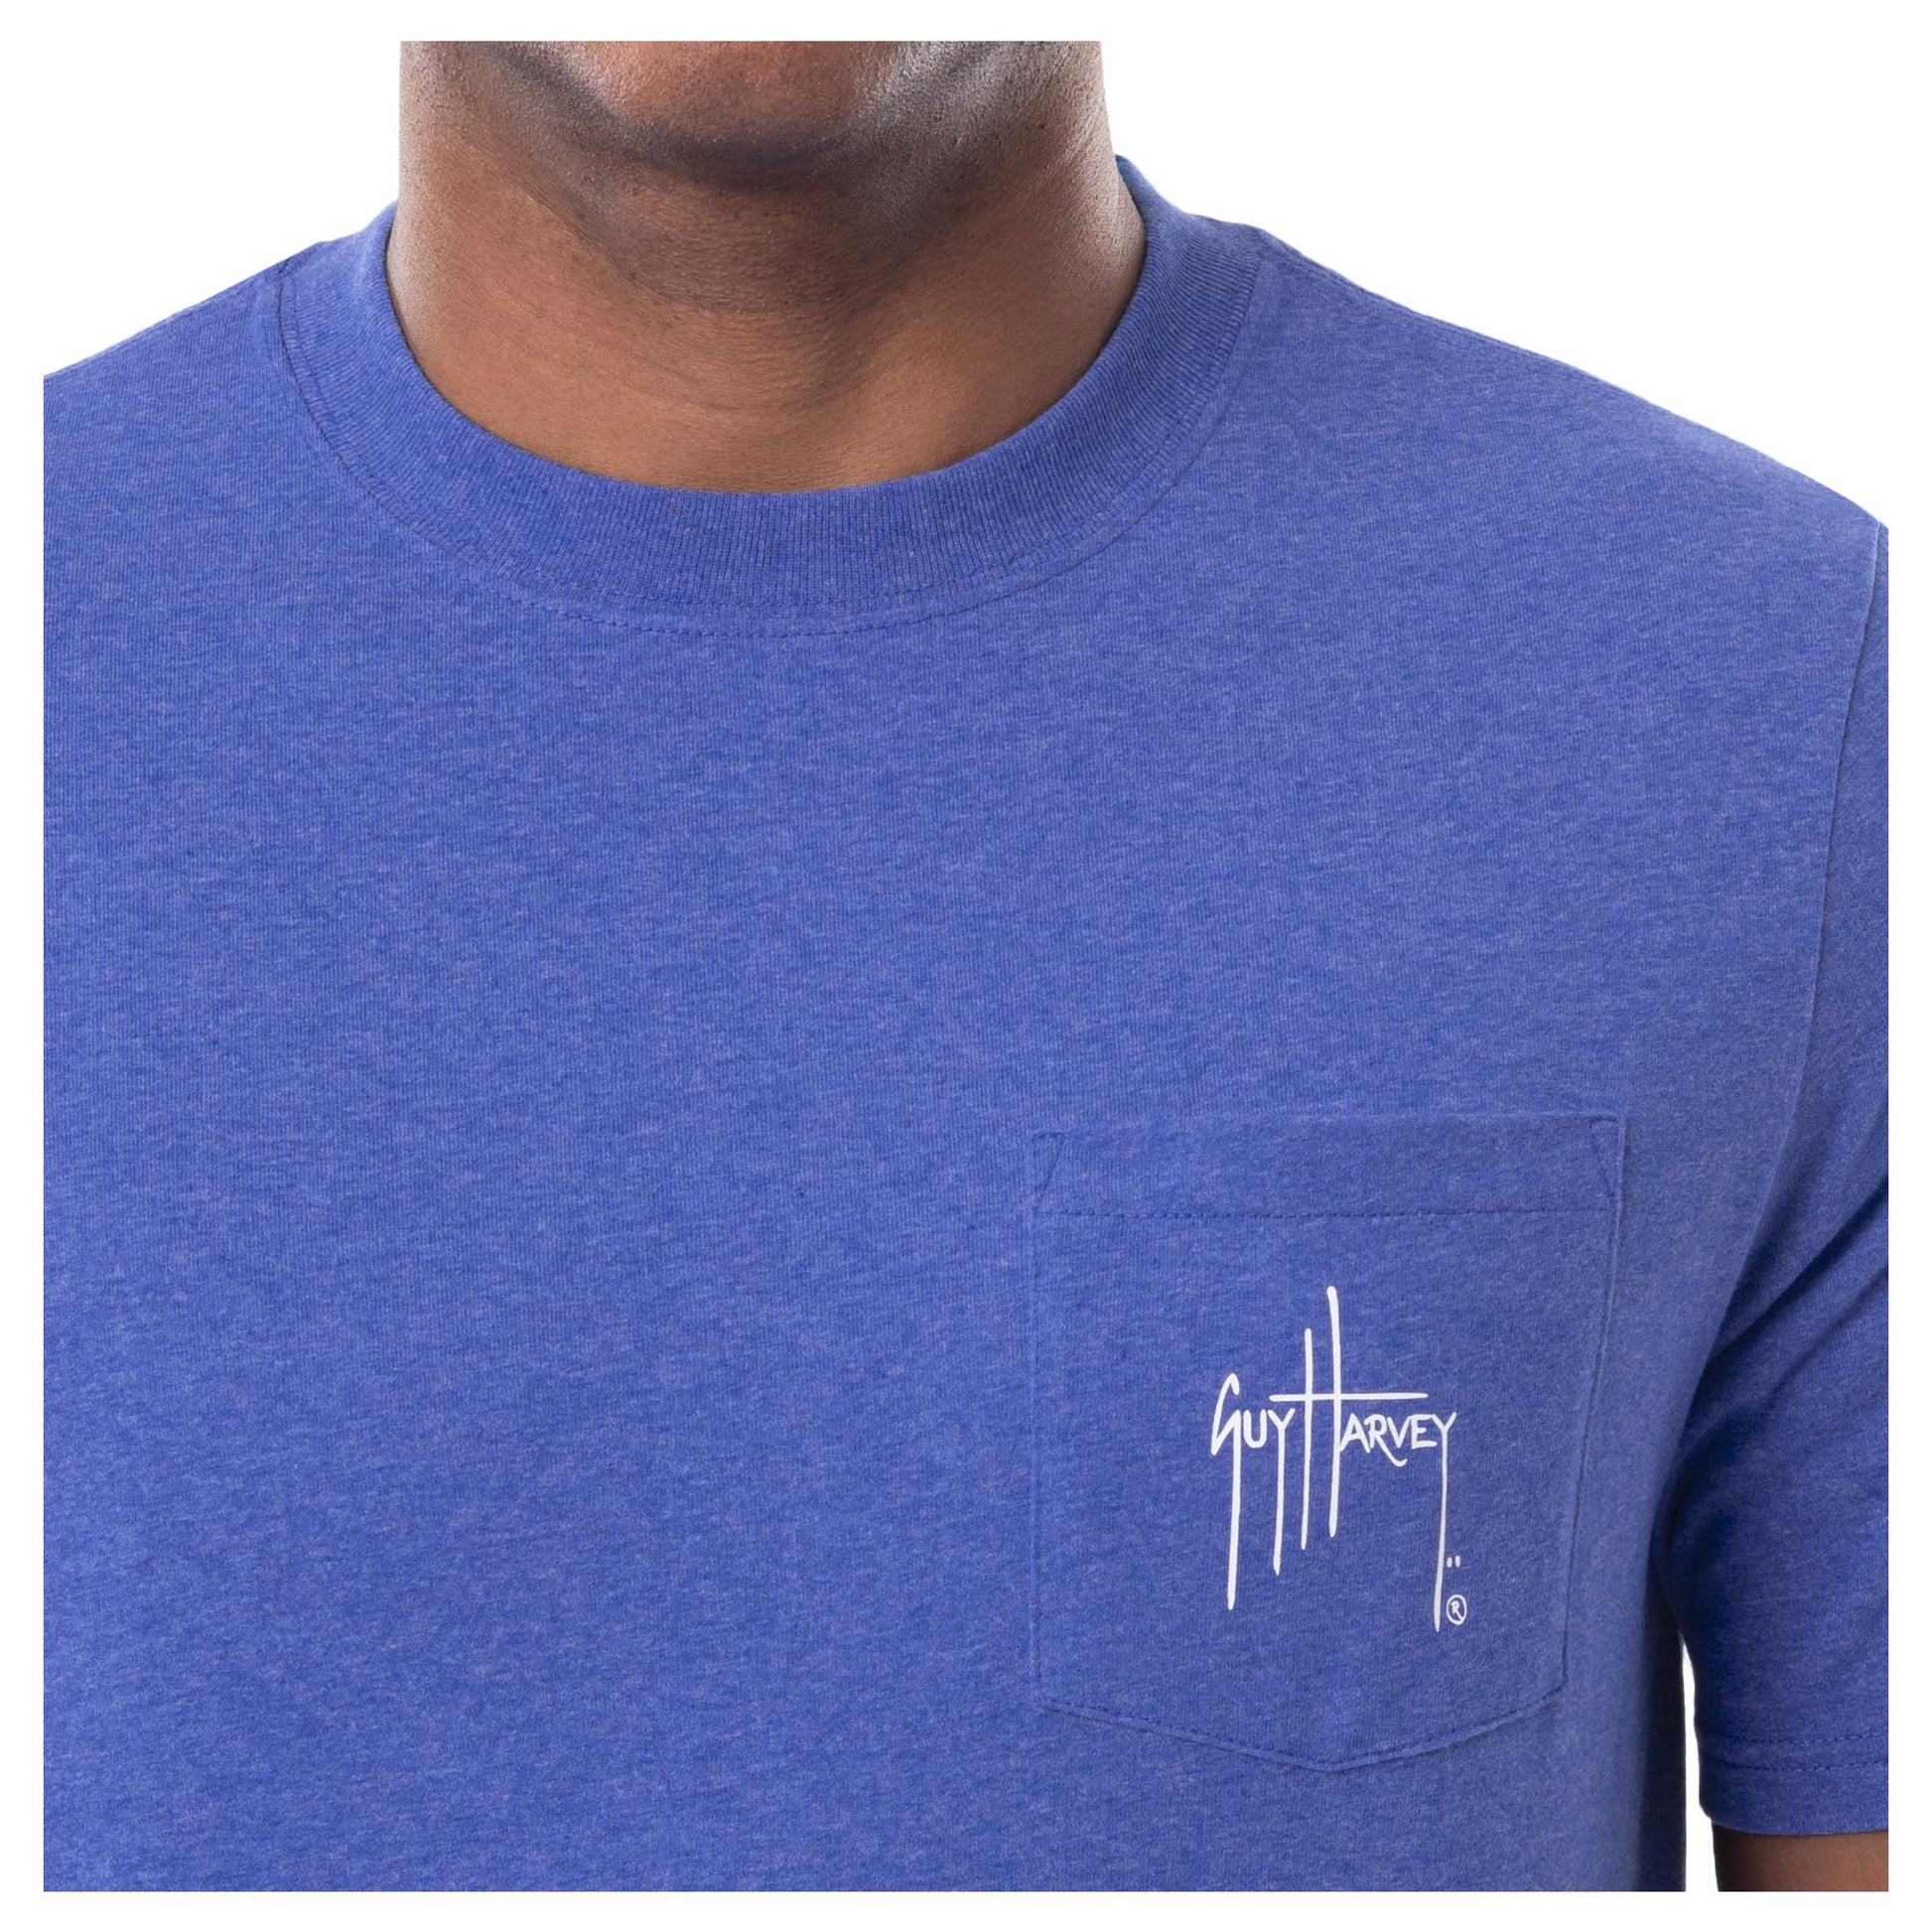 Guy Harvey | Men's Marlin Sketch Threadcycled Short Sleeve Pocket T-Shirt, Medium